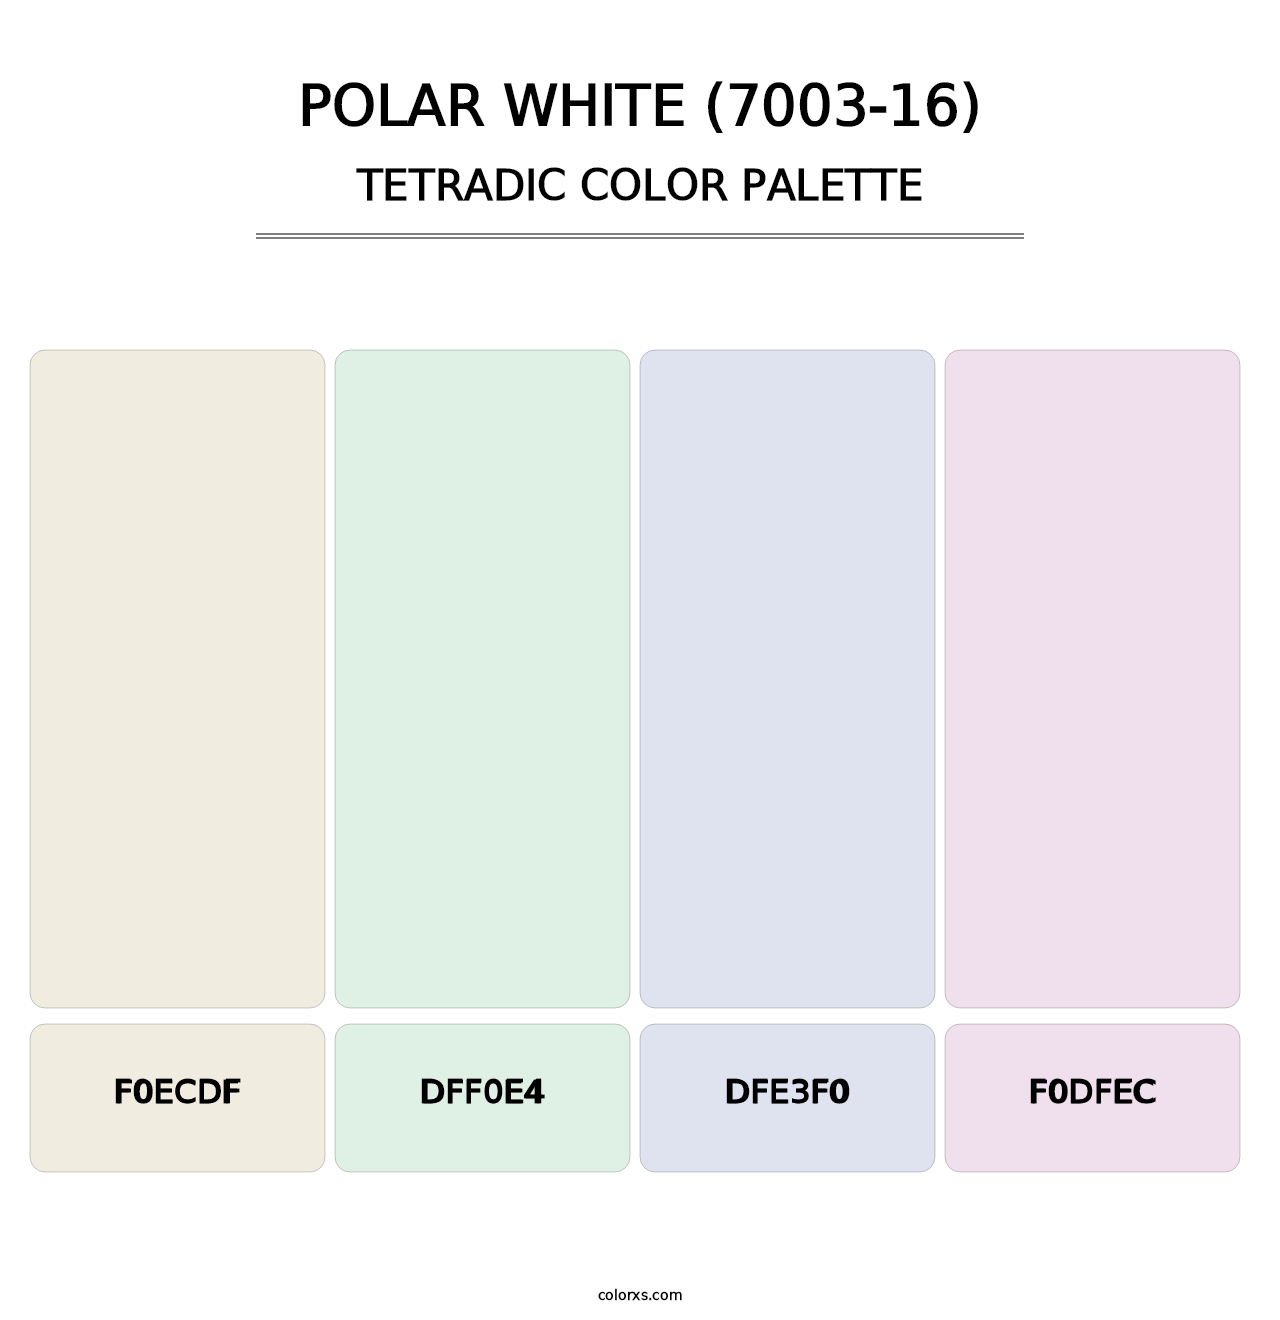 Polar White (7003-16) - Tetradic Color Palette